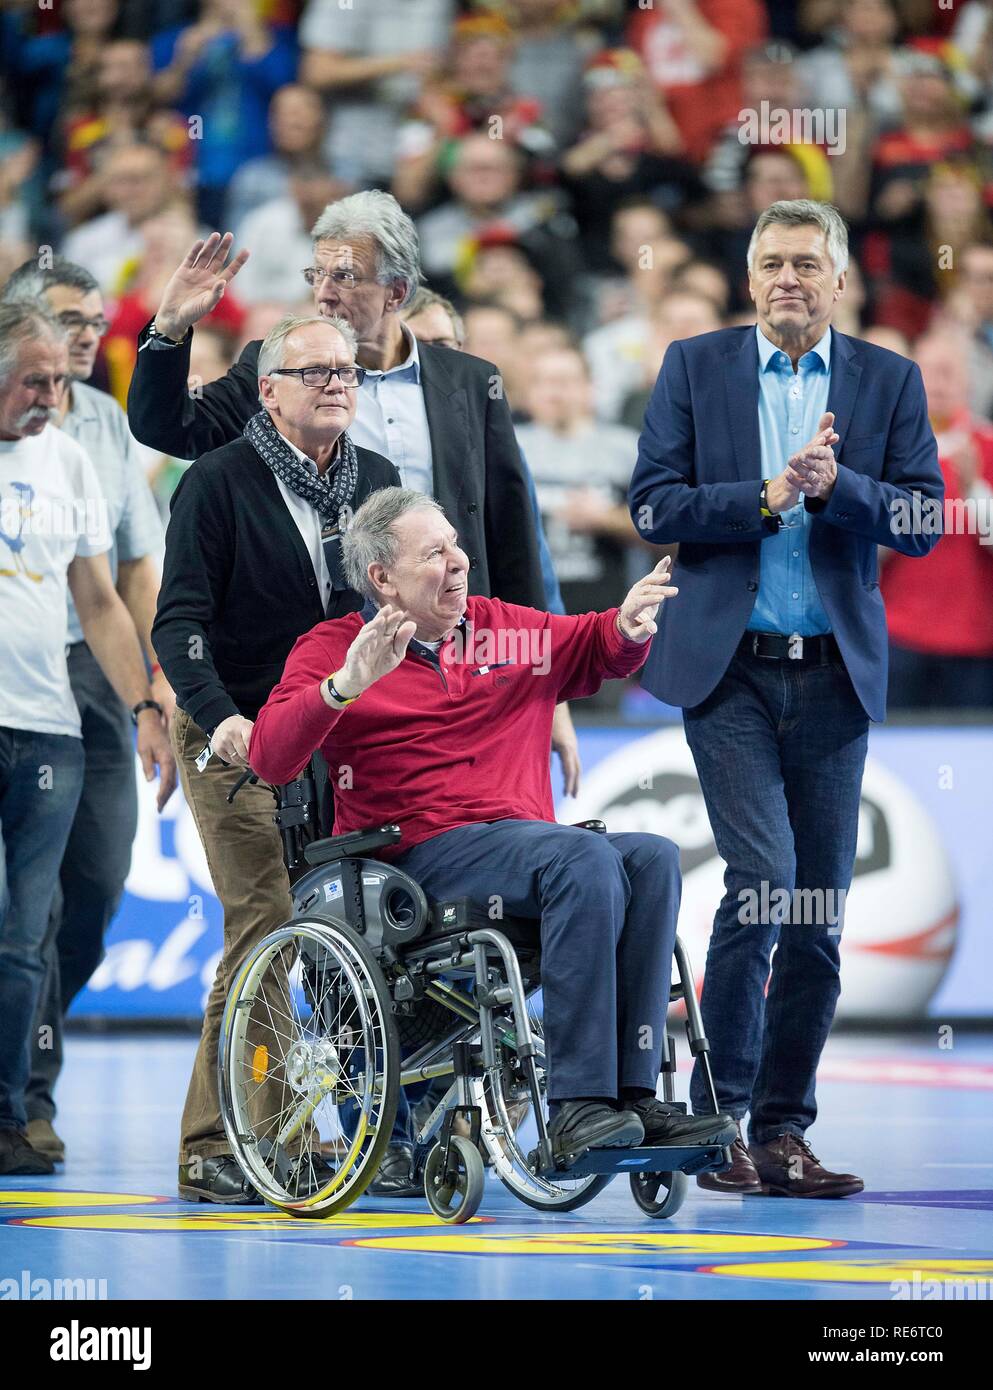 L'équipe championne du monde de handball 1978 célèbre son 65e anniversaire avec son withspieler Joachim DECKARM (avant/ancien joueur de handball). Tour principal Groupe I, l'Allemagne (GER) - Islande (ISL) 24 - 19, le 23/05/2019 à Koeln/Allemagne. Coupe du Monde de Handball 2019, à partir de la 10.01. - 27.01.2019 en Allemagne/Danemark. Dans le monde d'utilisation | Banque D'Images